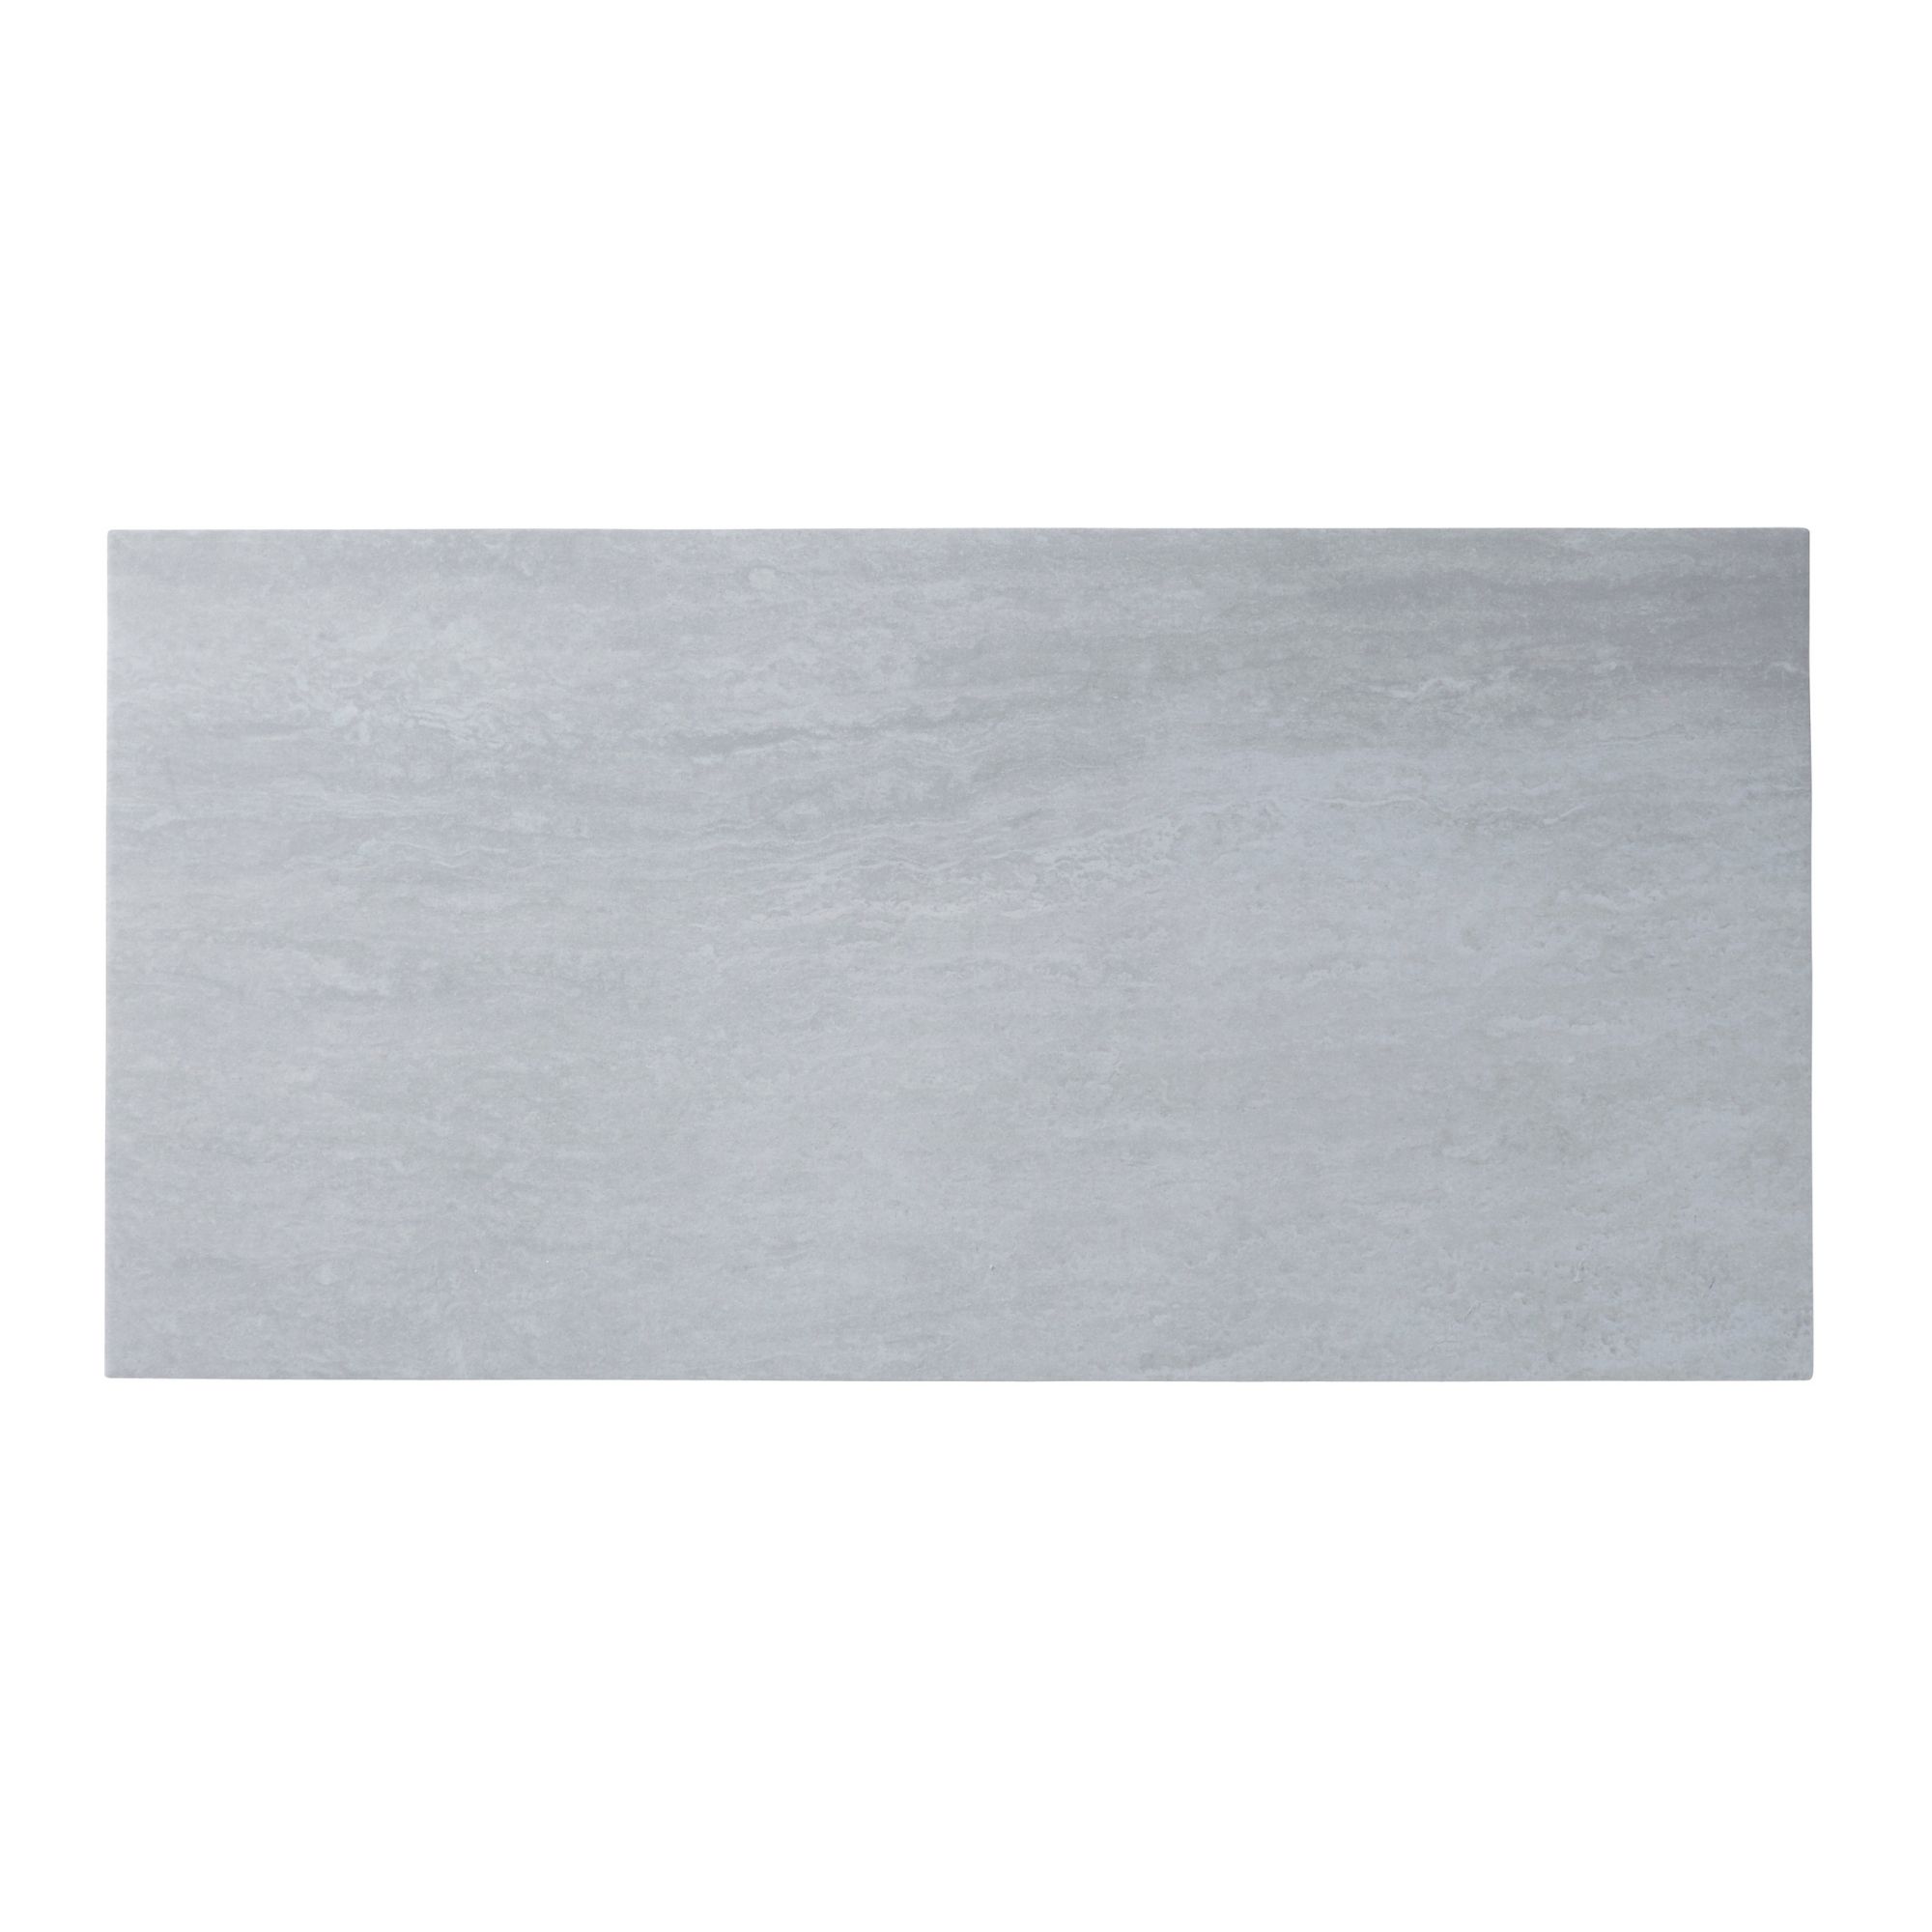 Colours Soft travertine Grey Matt Stone effect Porcelain Wall & floor Tile Sample